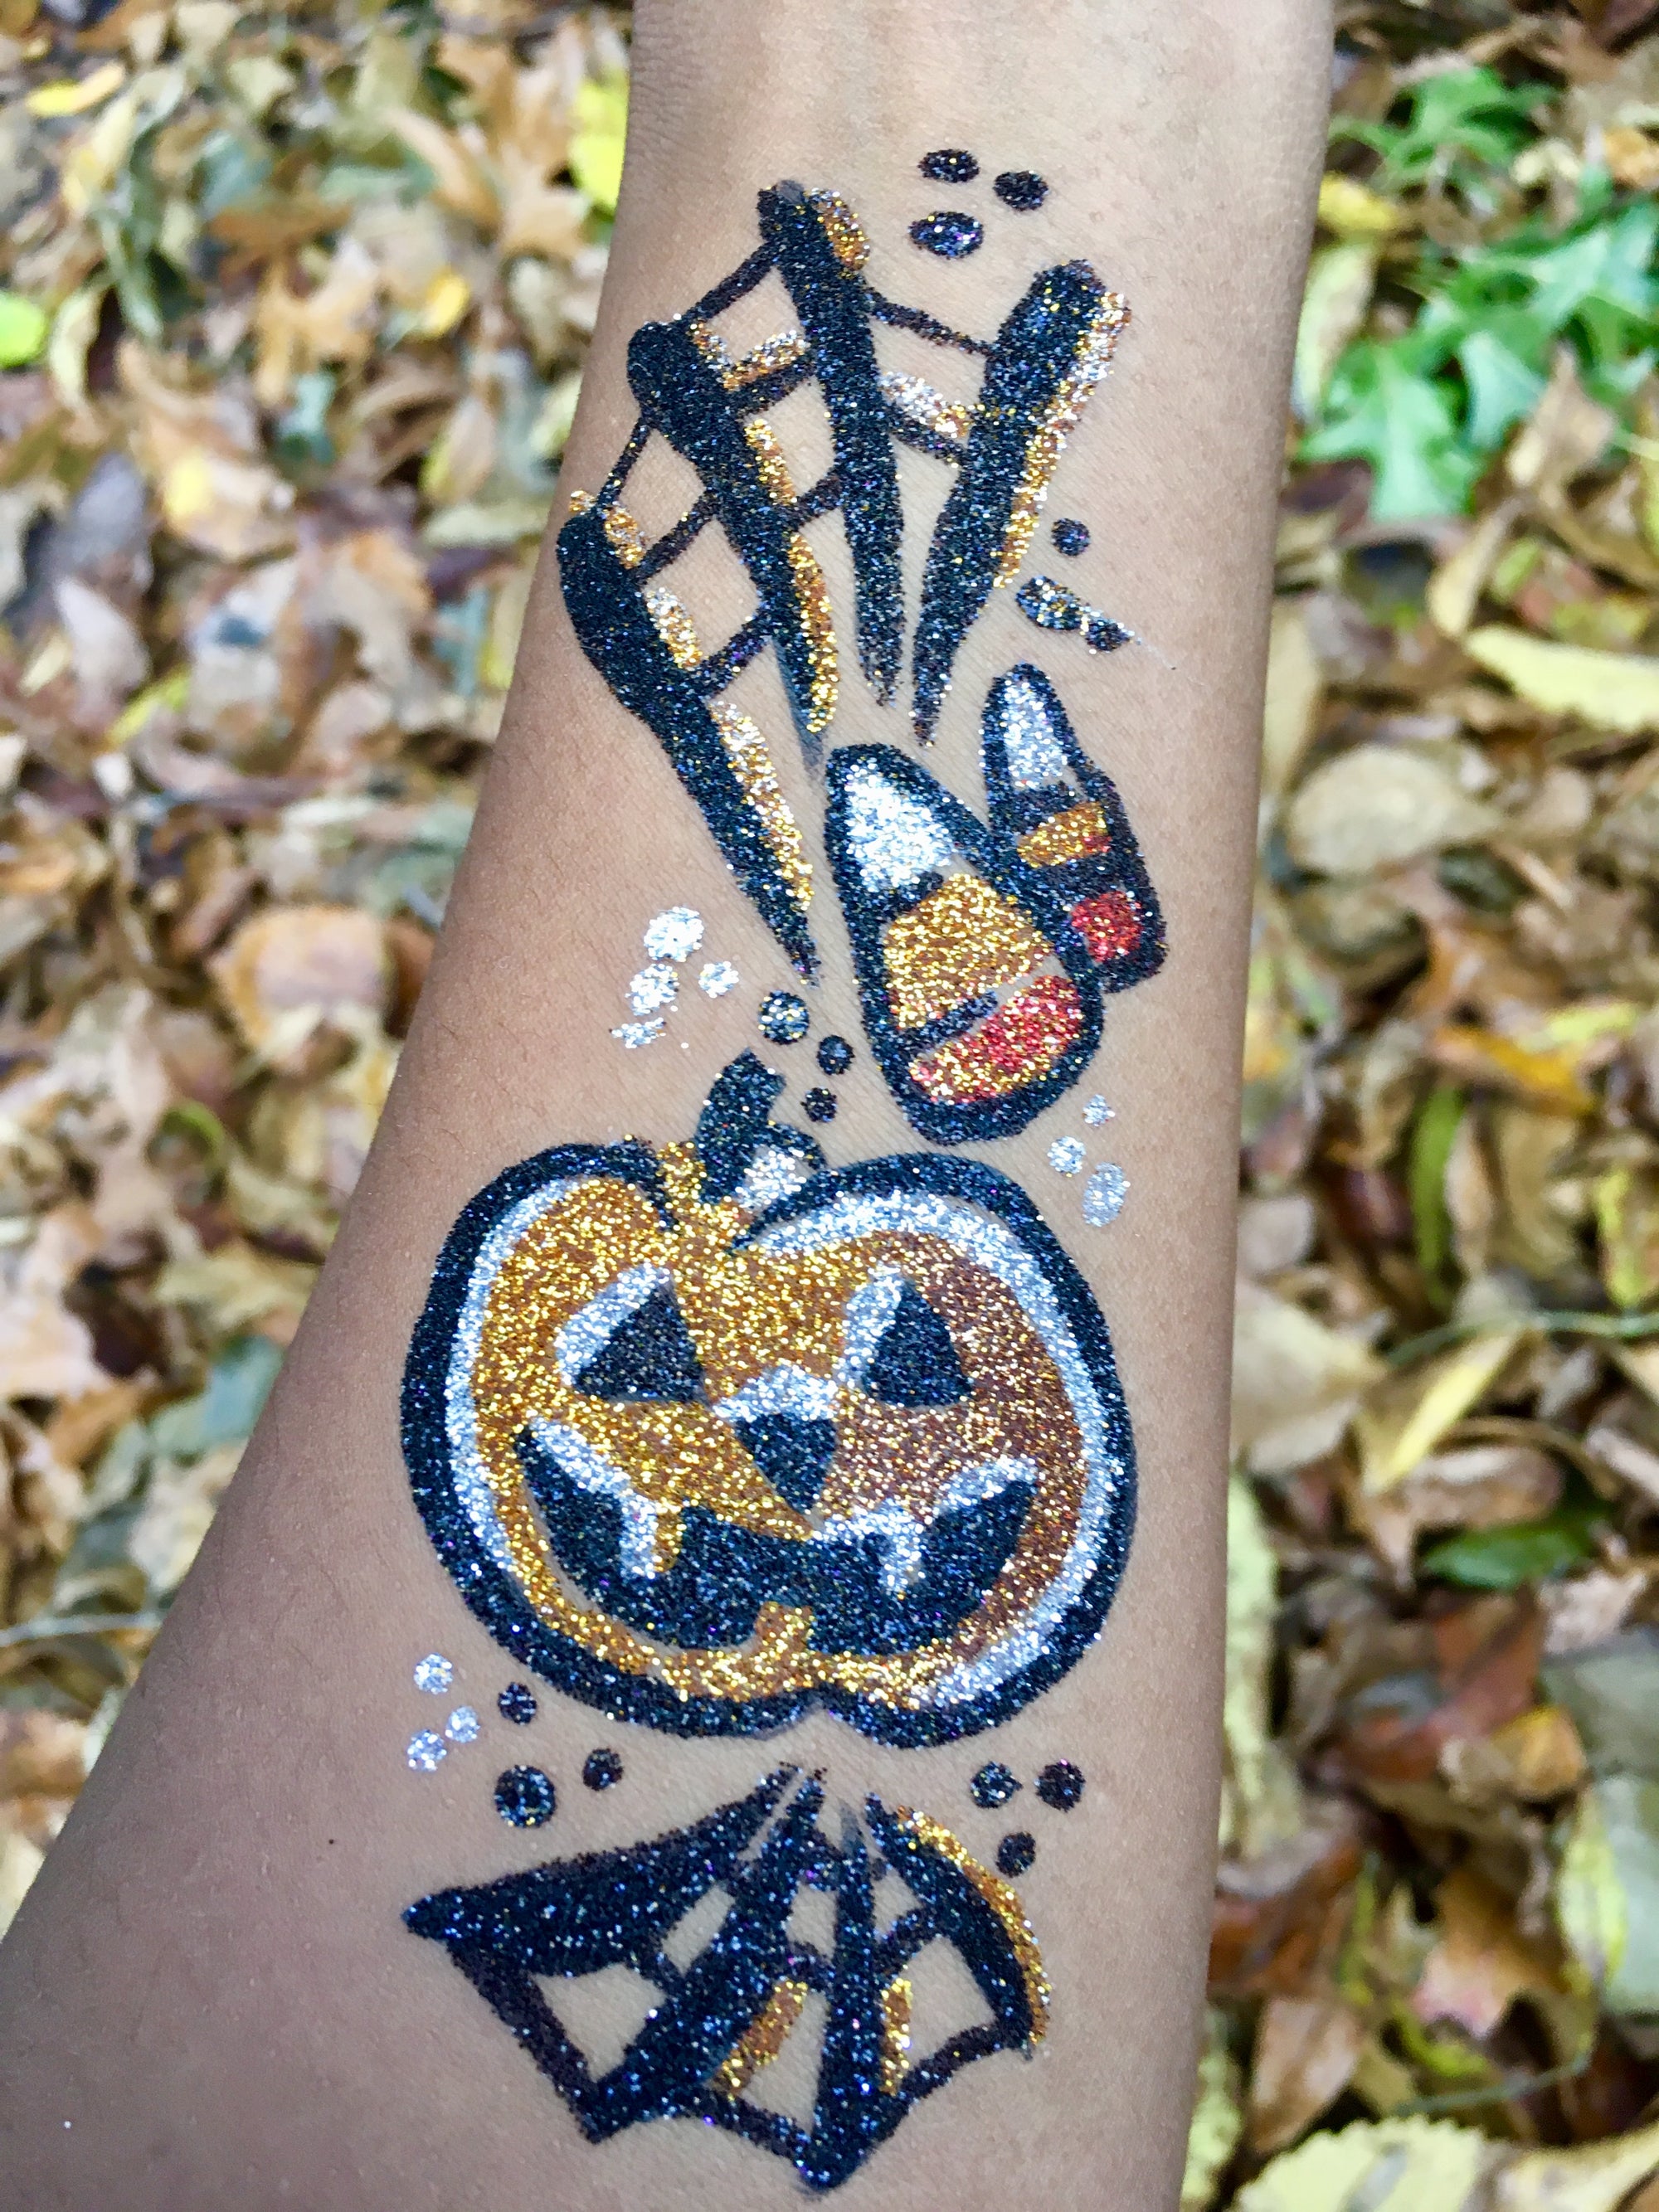 Freehand Glitter Tattoo Pumpkin by Zuri FX